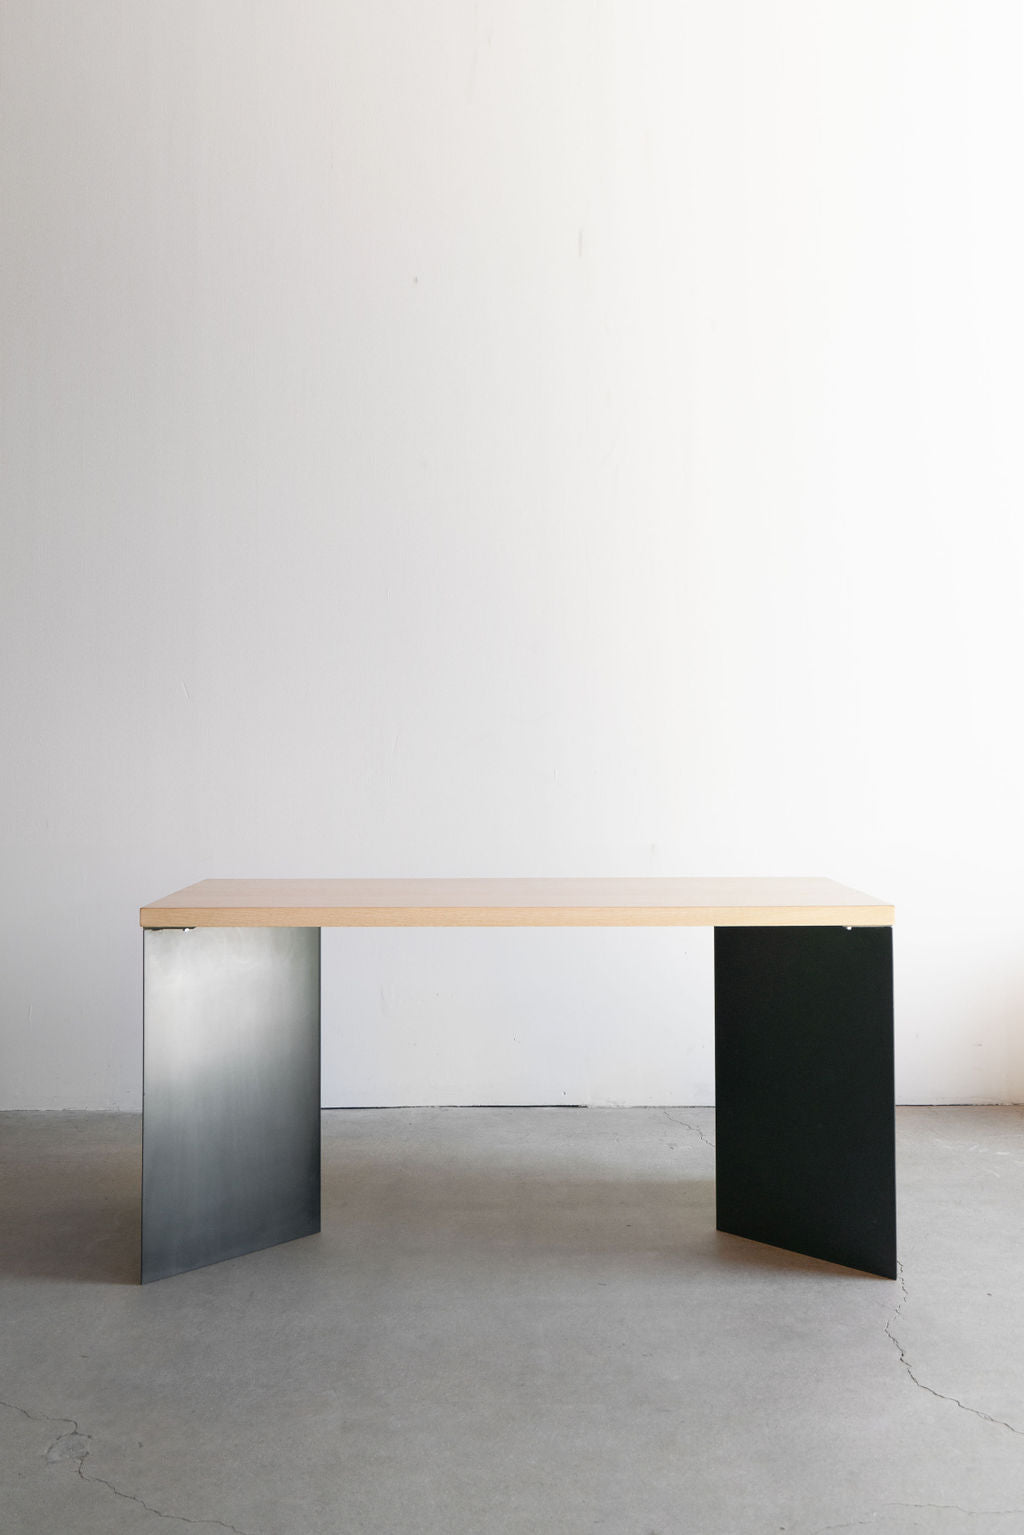 Sierra desk - steel legs and wood top